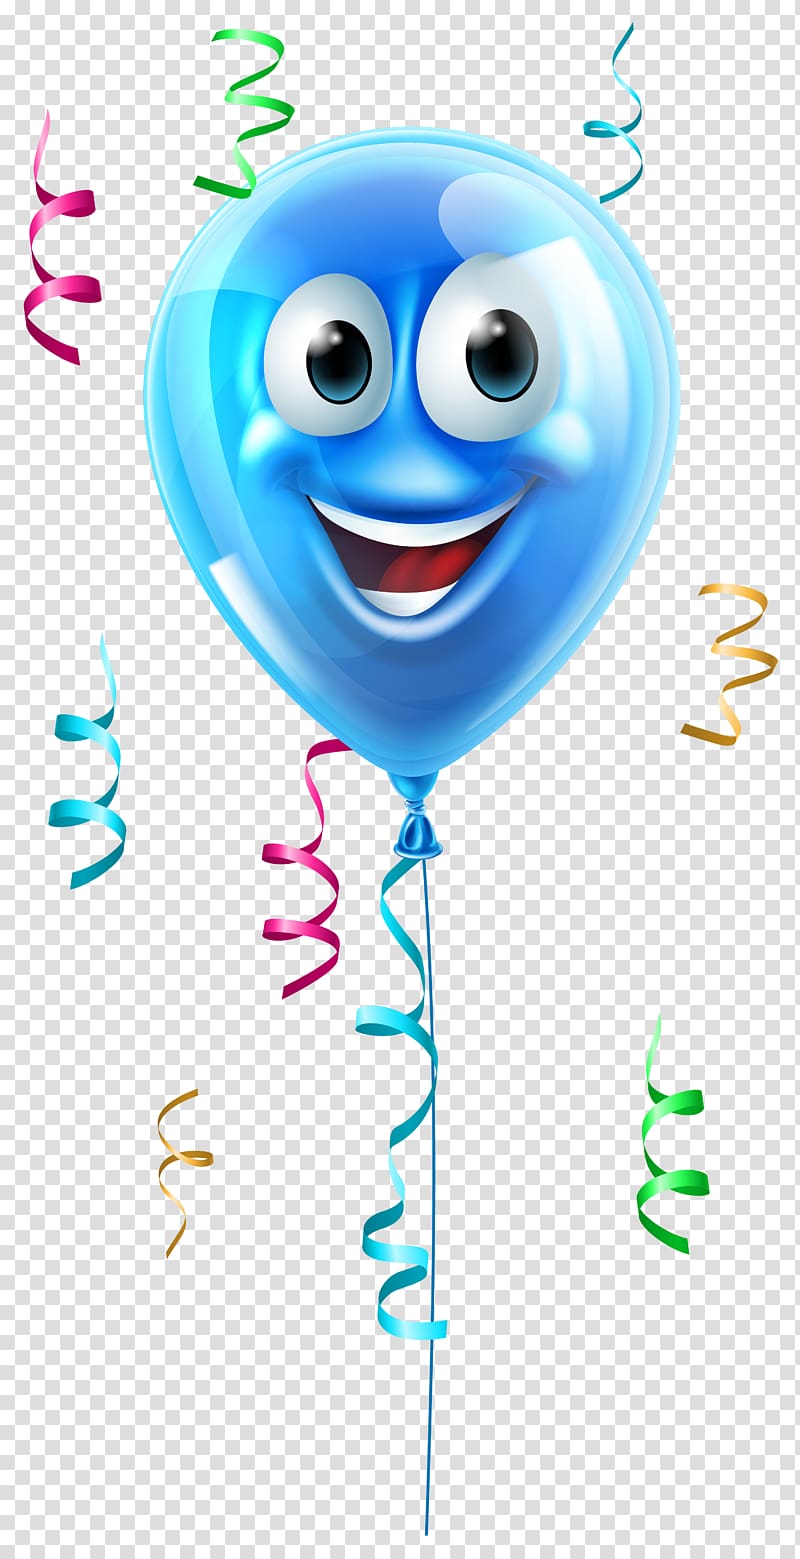 Free download | Blue balloon illustration, Balloon Face Icon, Balloon ...